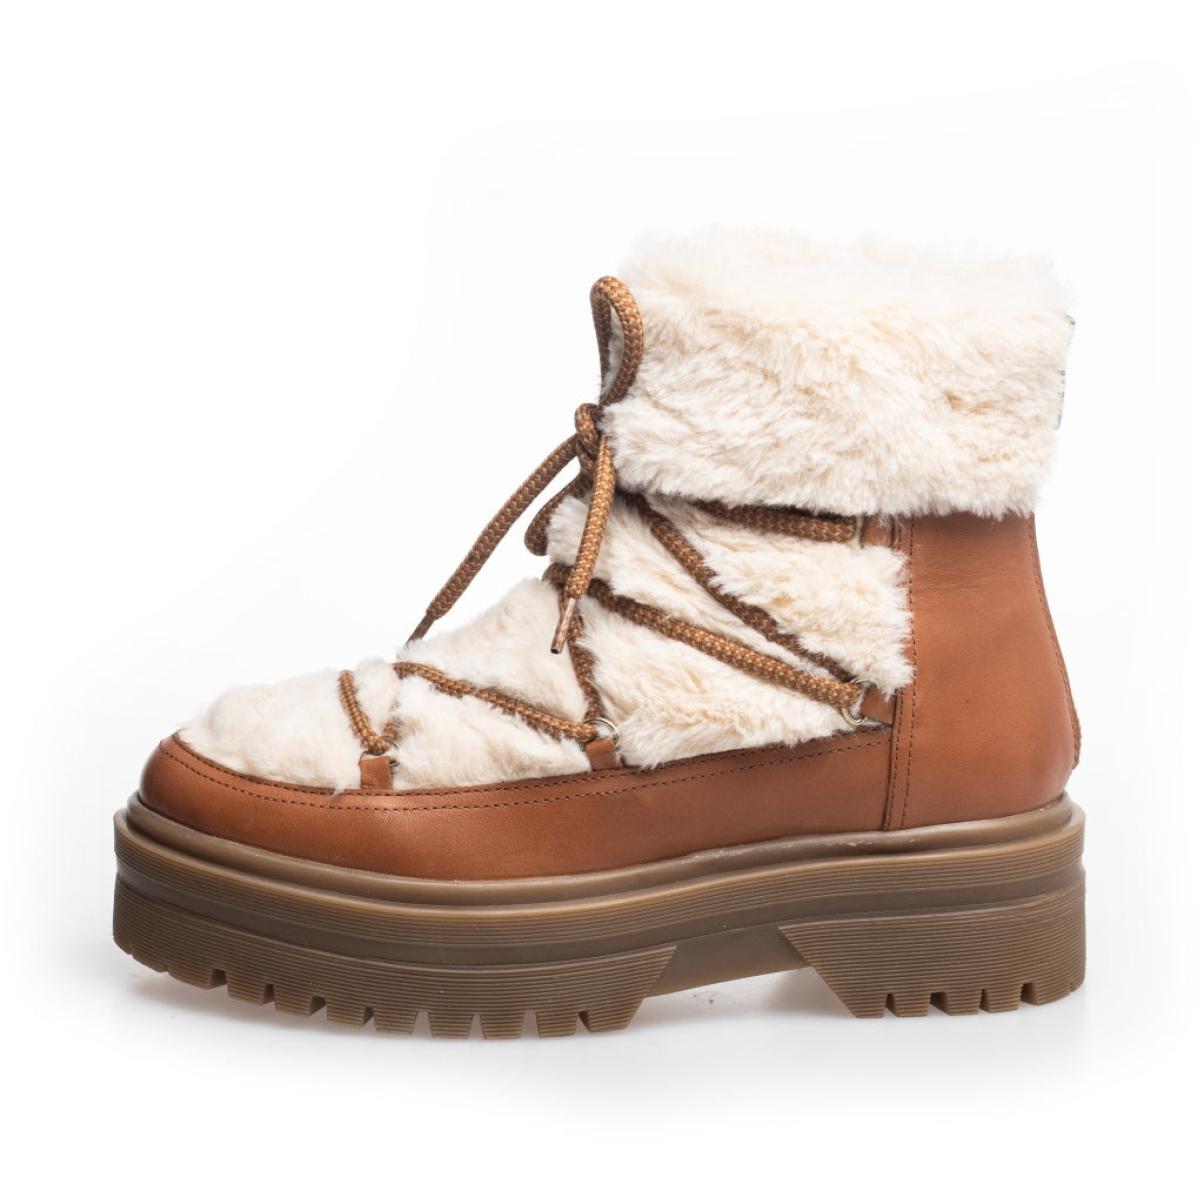 Lavish Snow By Snow 22 Low - Cognac Off-White Ankle Boots Women Copenhagen Shoes - 1